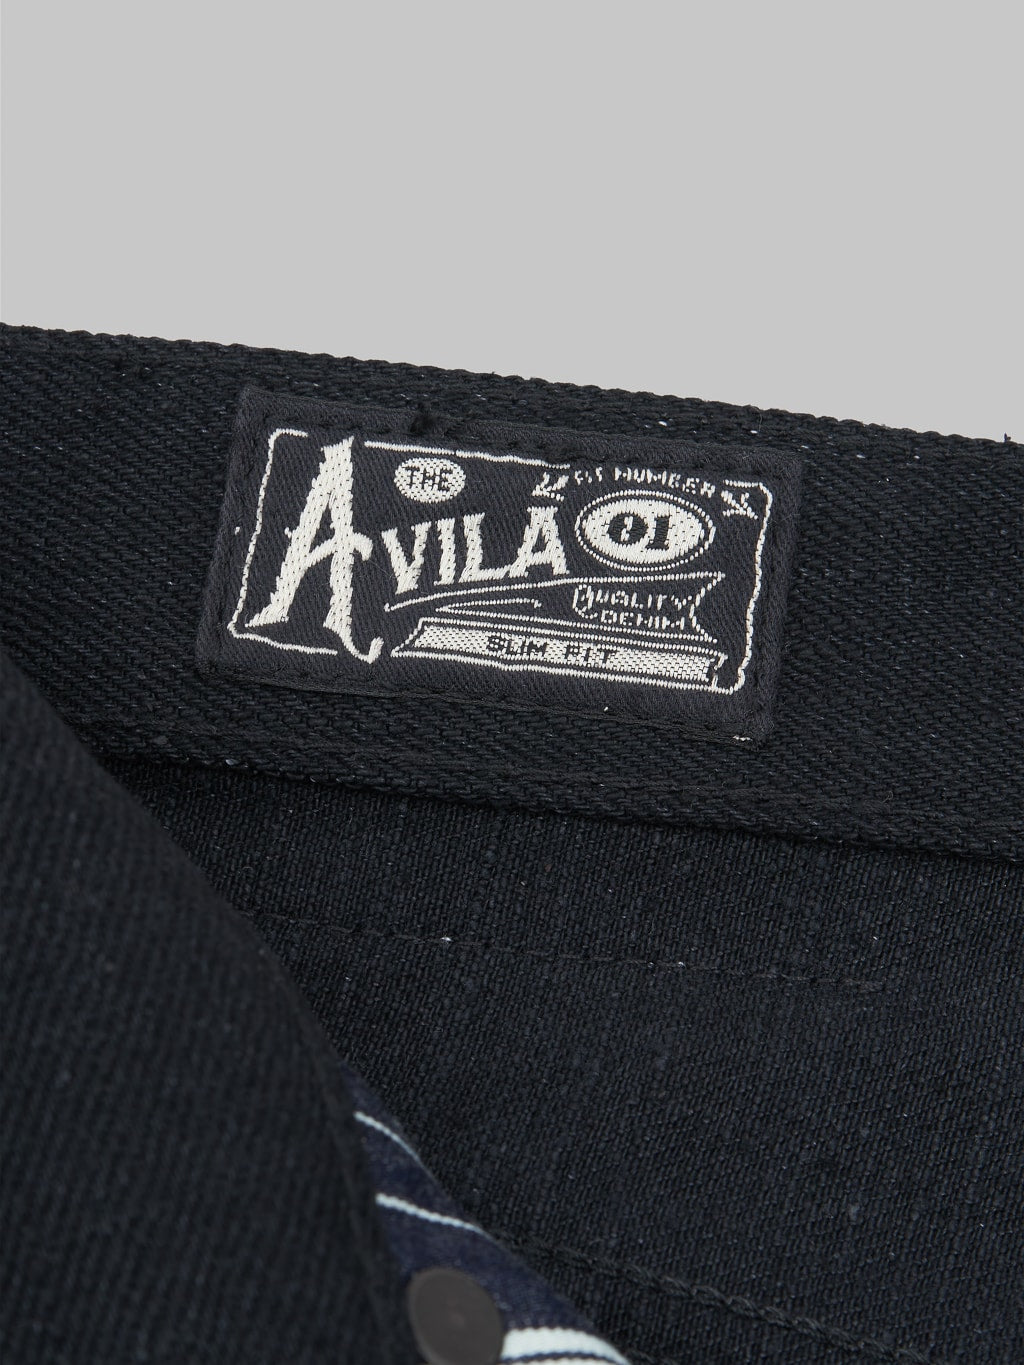 Freenote Cloth Avila 17oz Black Denim Slim Taper Jeans tag